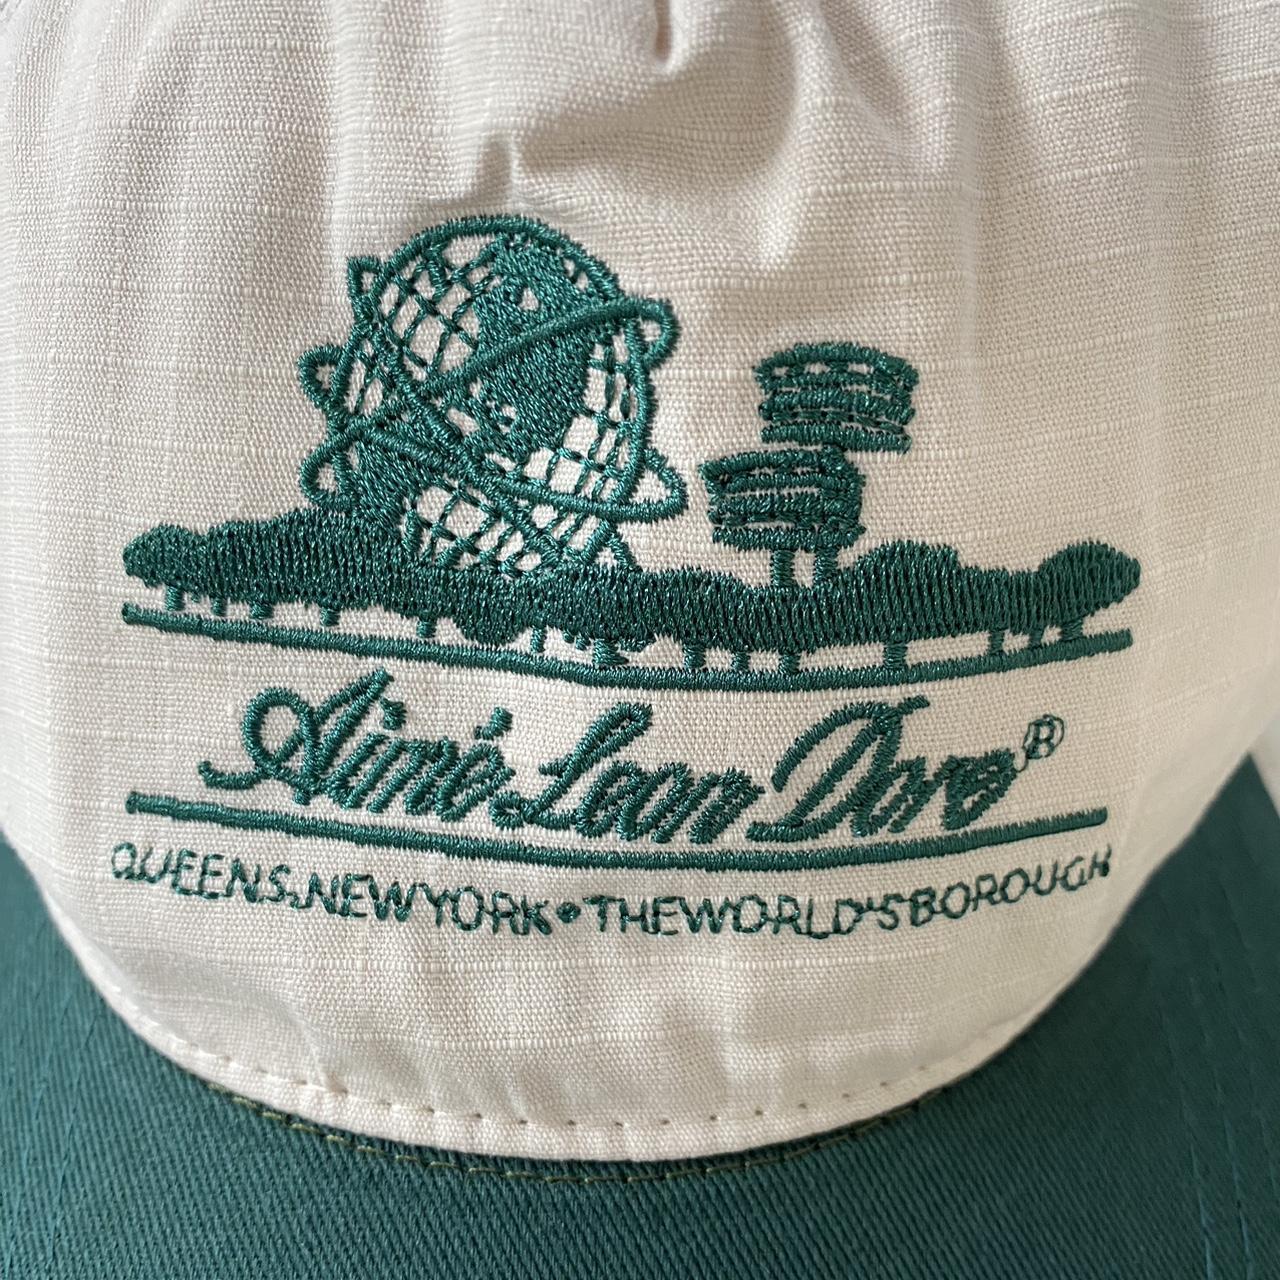 Aime Leon Dore Unisphere Hat Navy